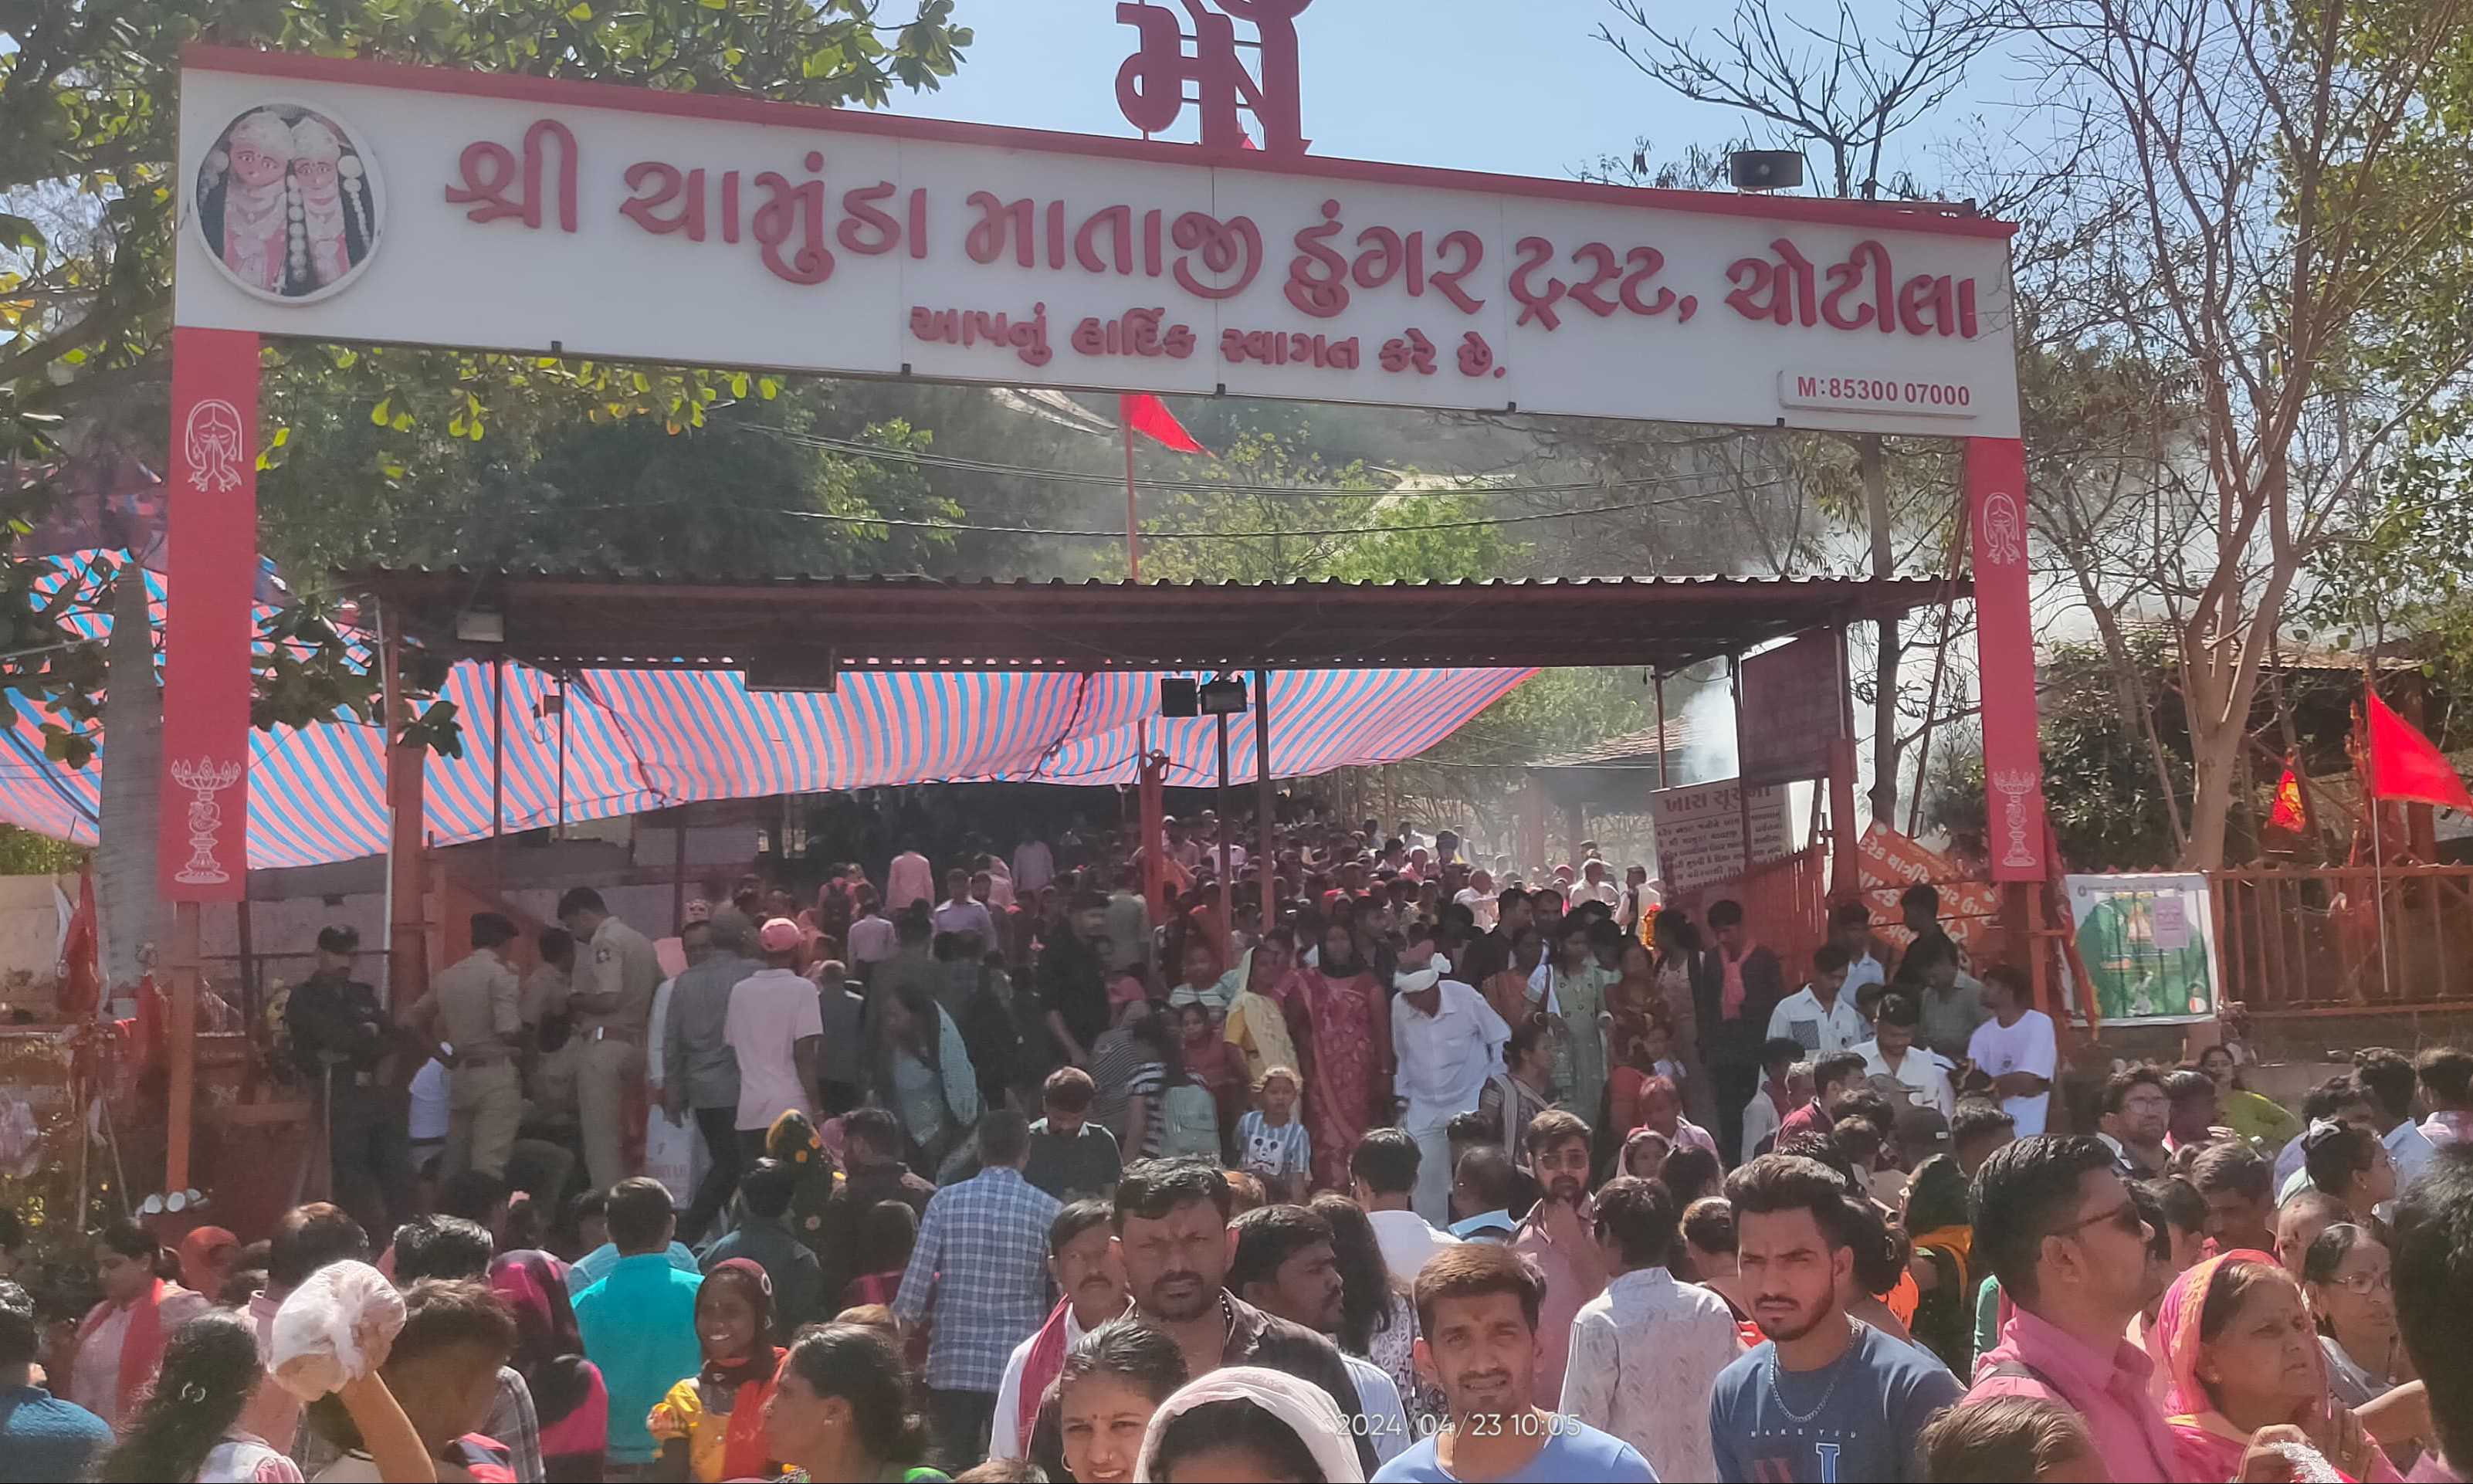 ગુજરાતના બધા જ મંદિરોમાં પૂનમ ના દિવસે ખુબ જ મોટી સંખ્યા મા યાત્રાળુઓ દર્શન માટે આવતા હોય છે.યાત્રાધામ